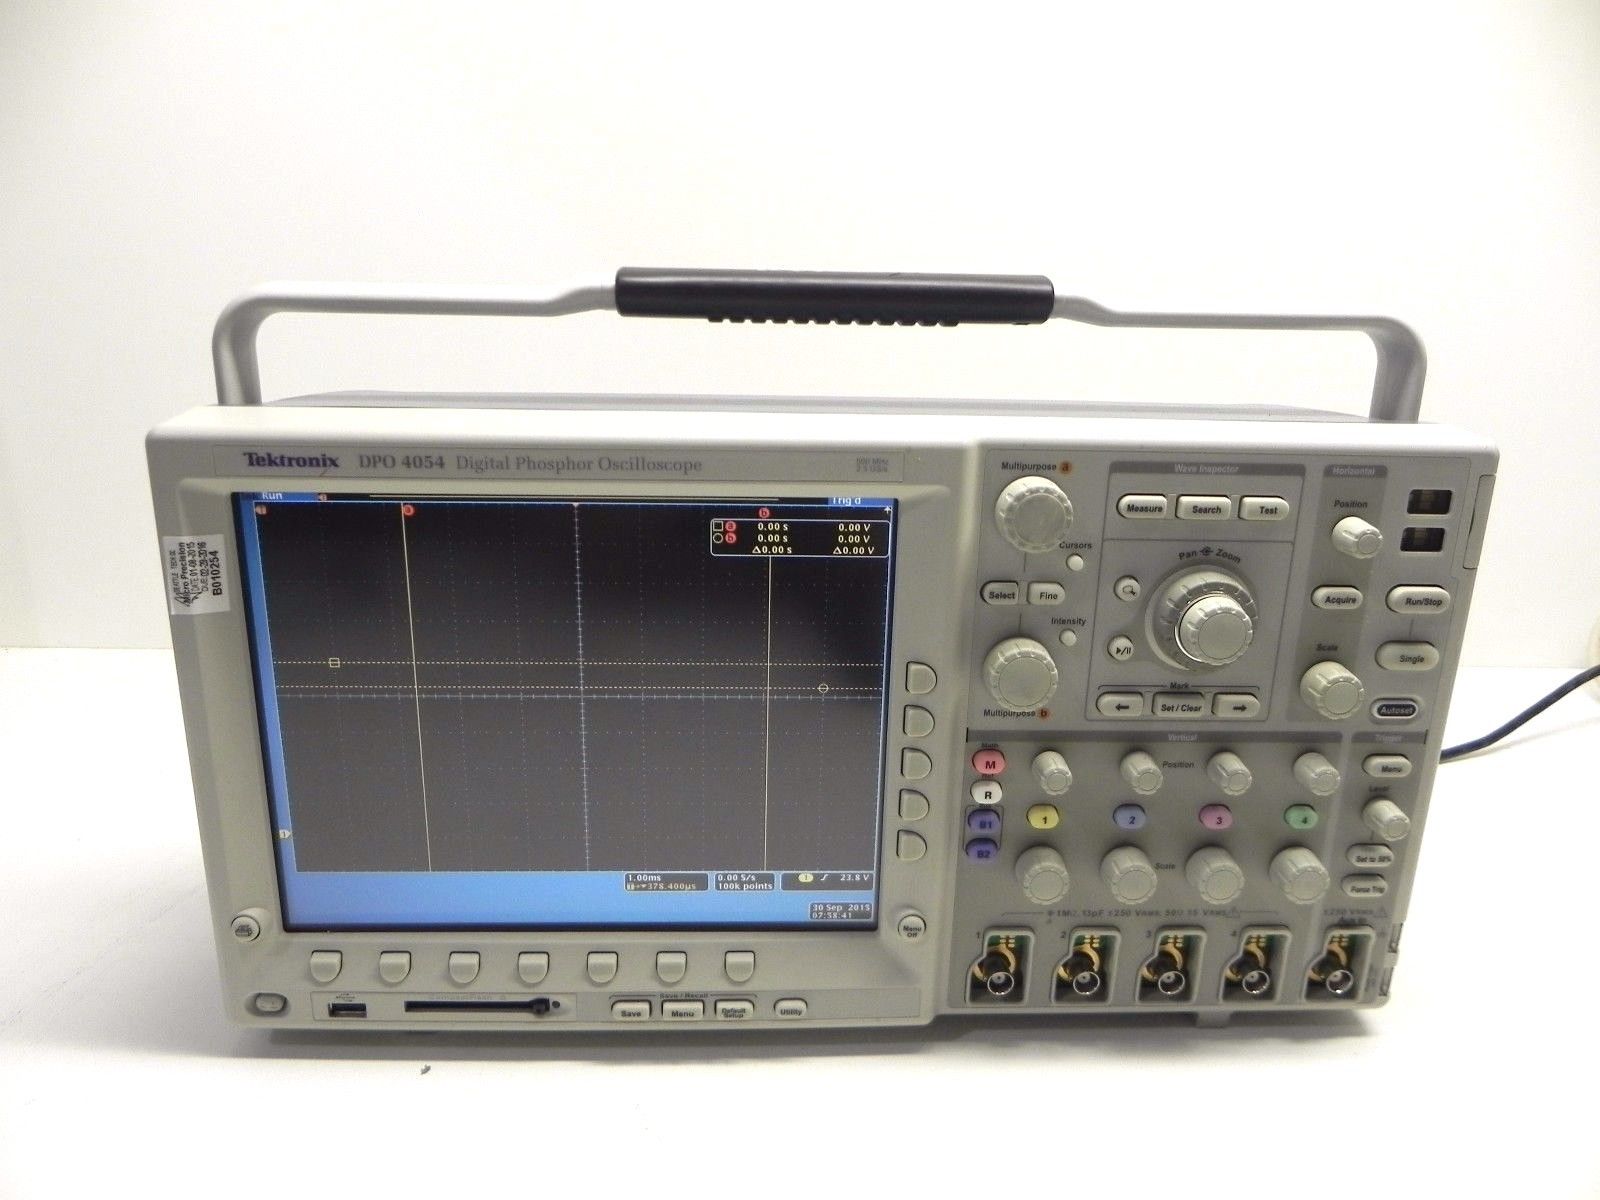 Tektronix DPO4054 Oscilloscope, 4-Channel, 500 MHz – Calibrated